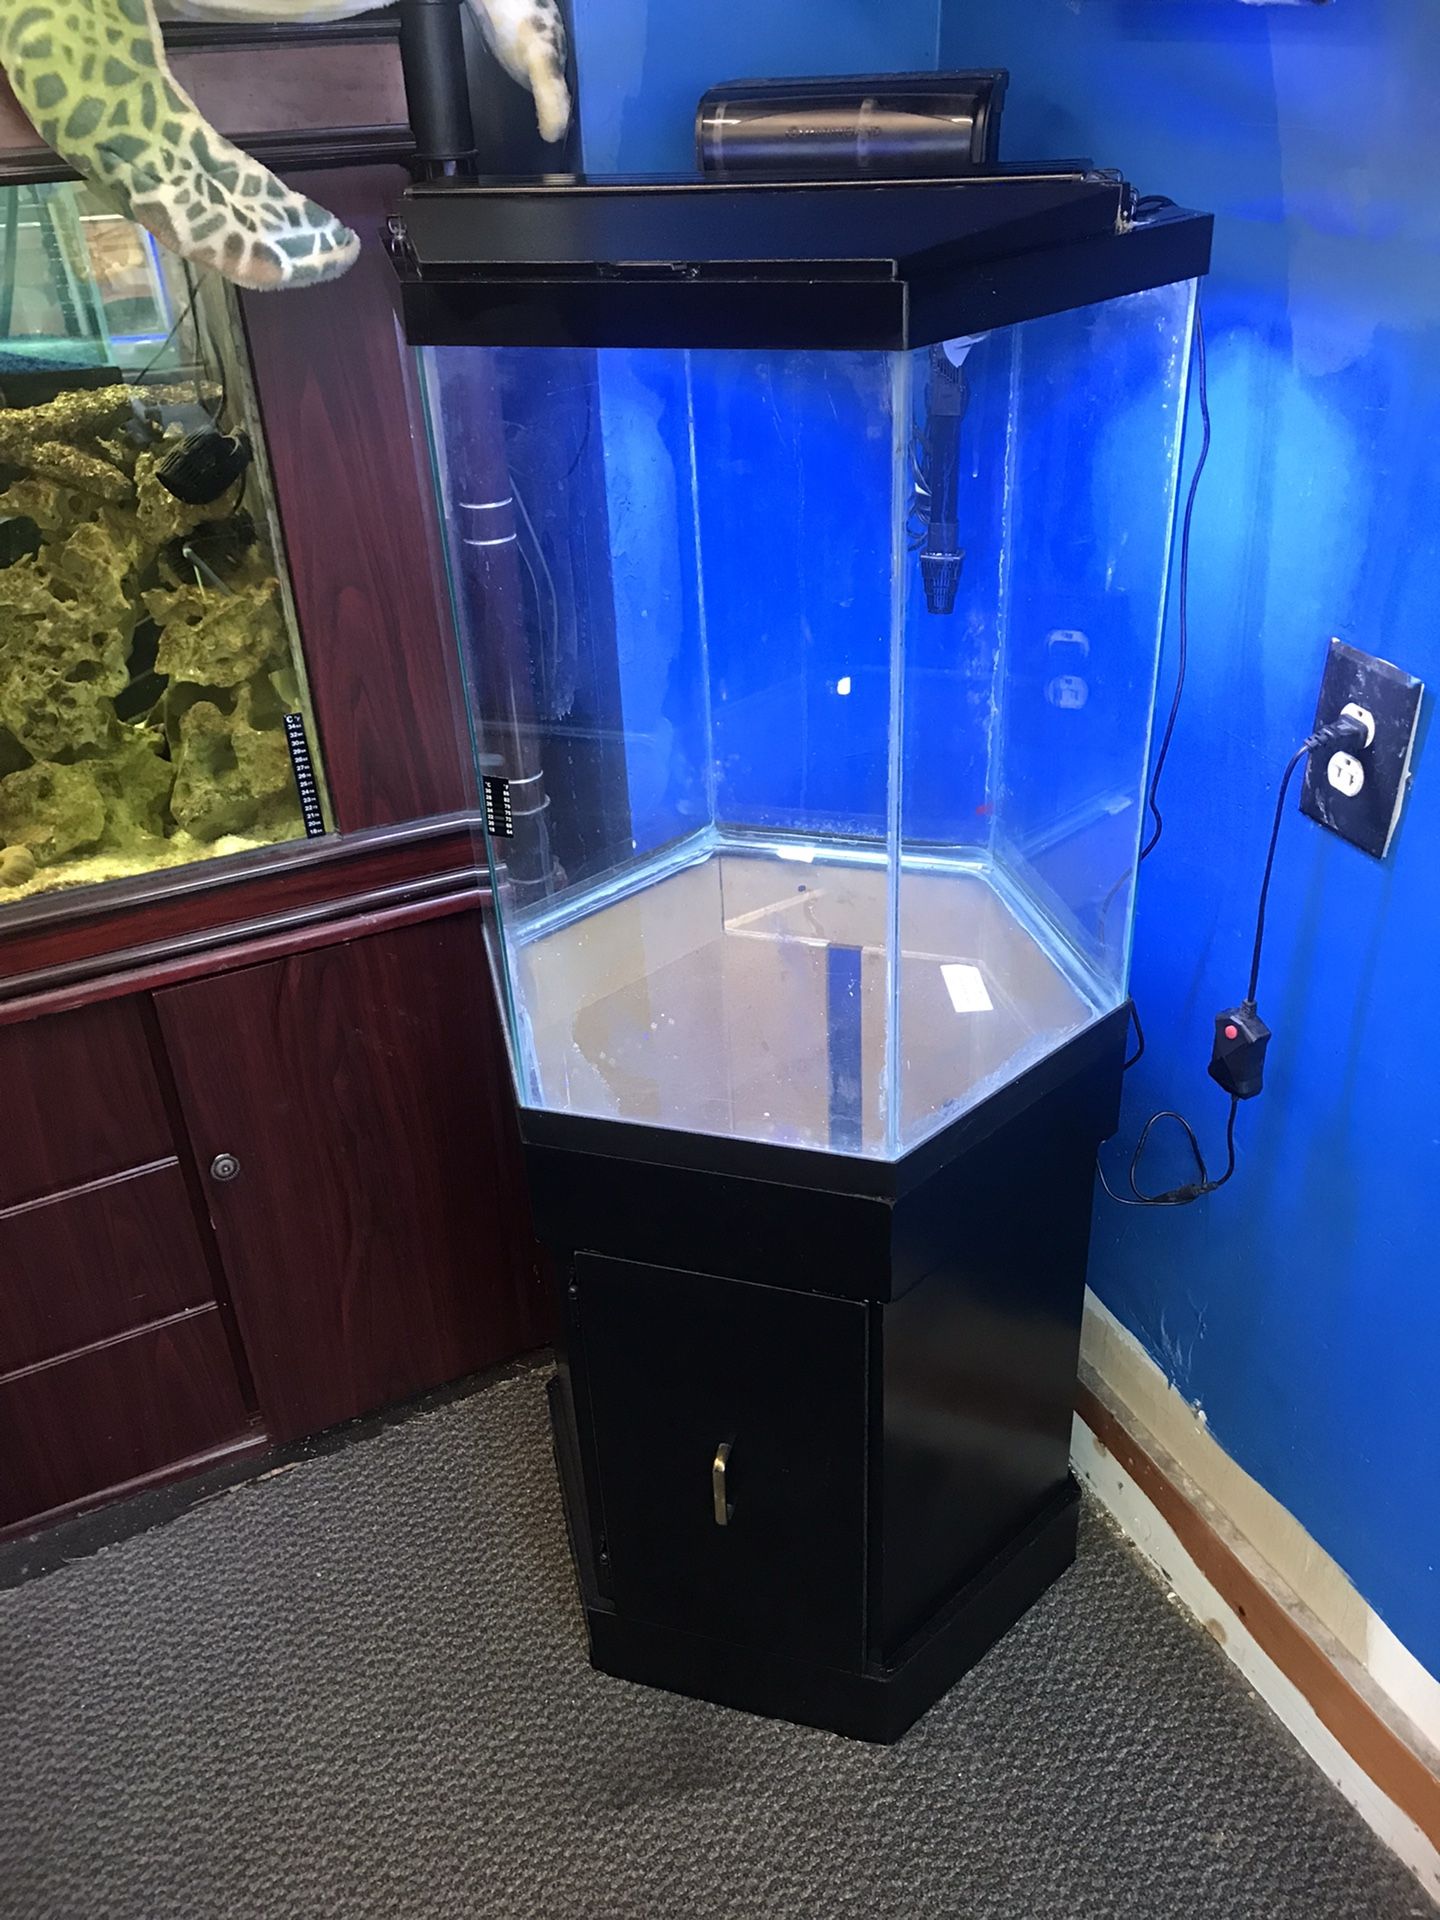 35 gallon Hexagon Aquarium Fish Tank Complete $300